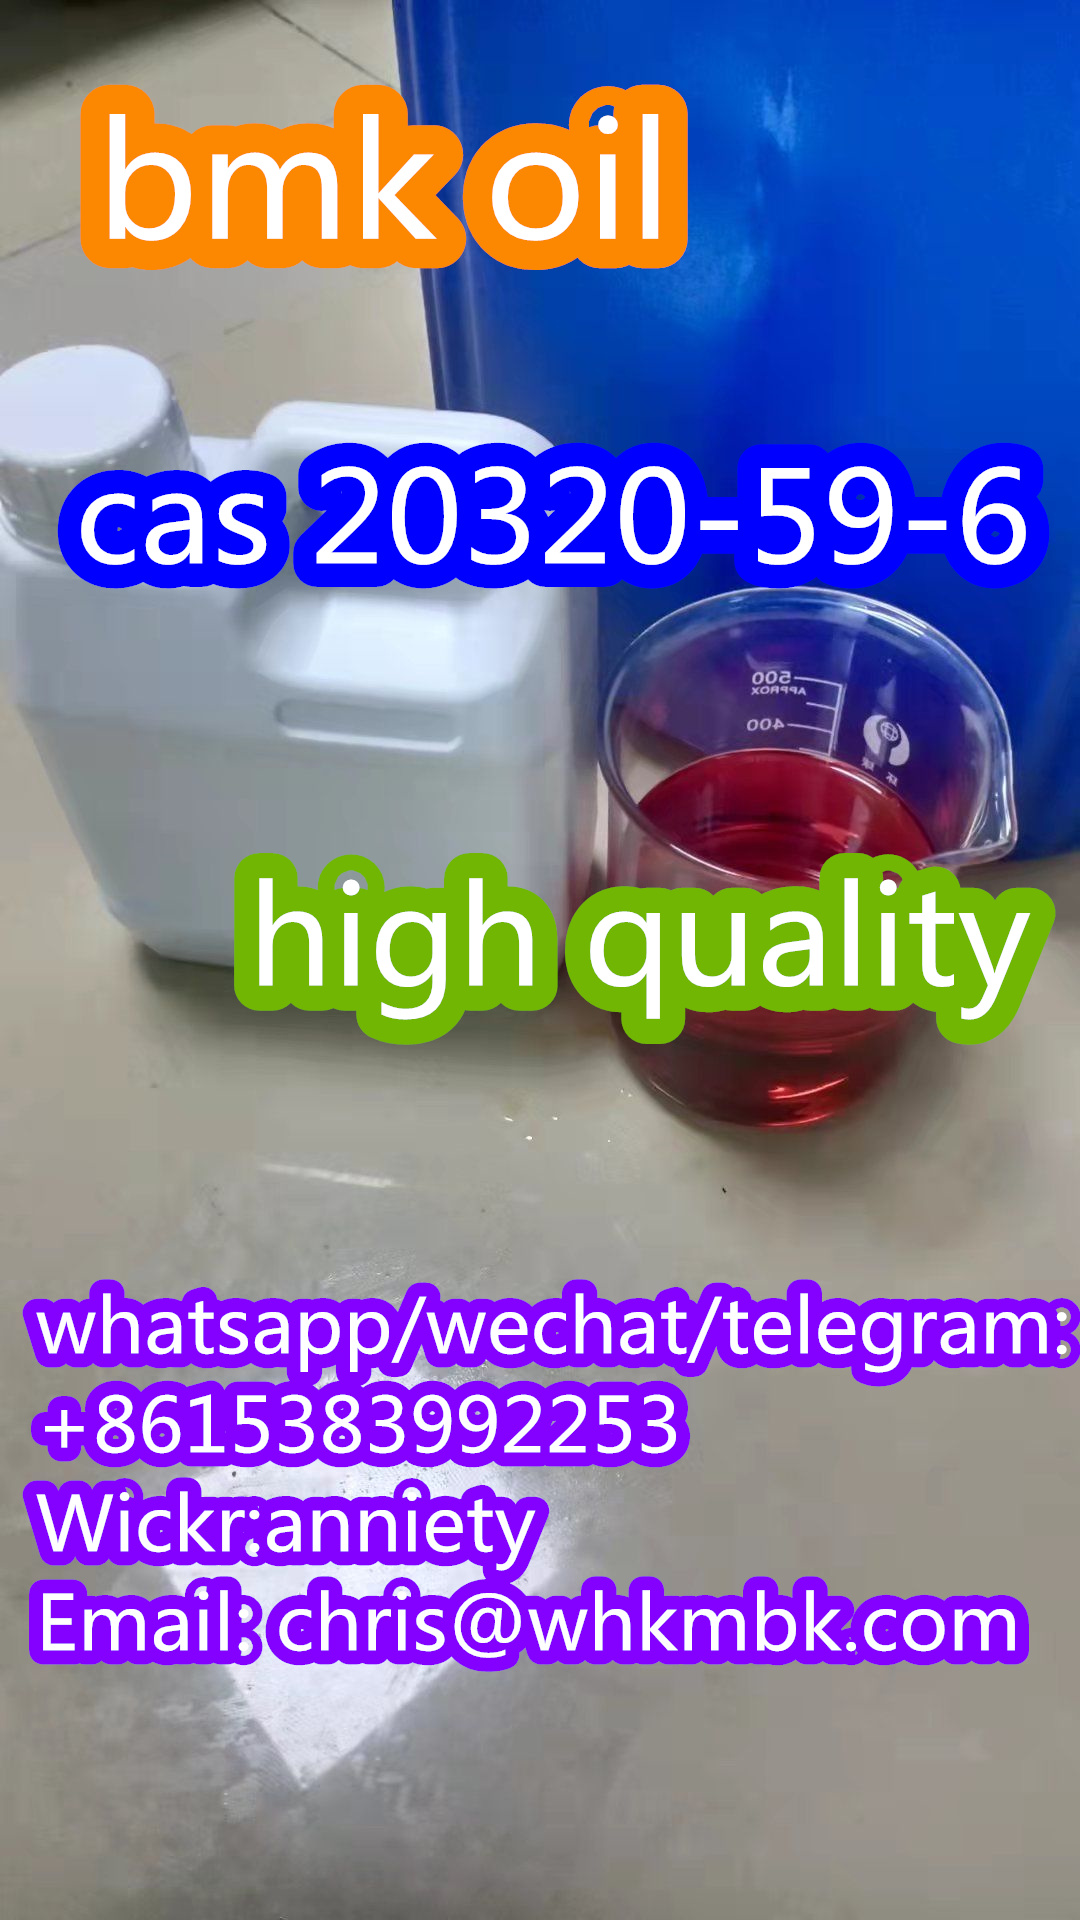 whatsapp:+86 153 8399 2253 new bmk powder/oil cas 20320-59-6 - photo